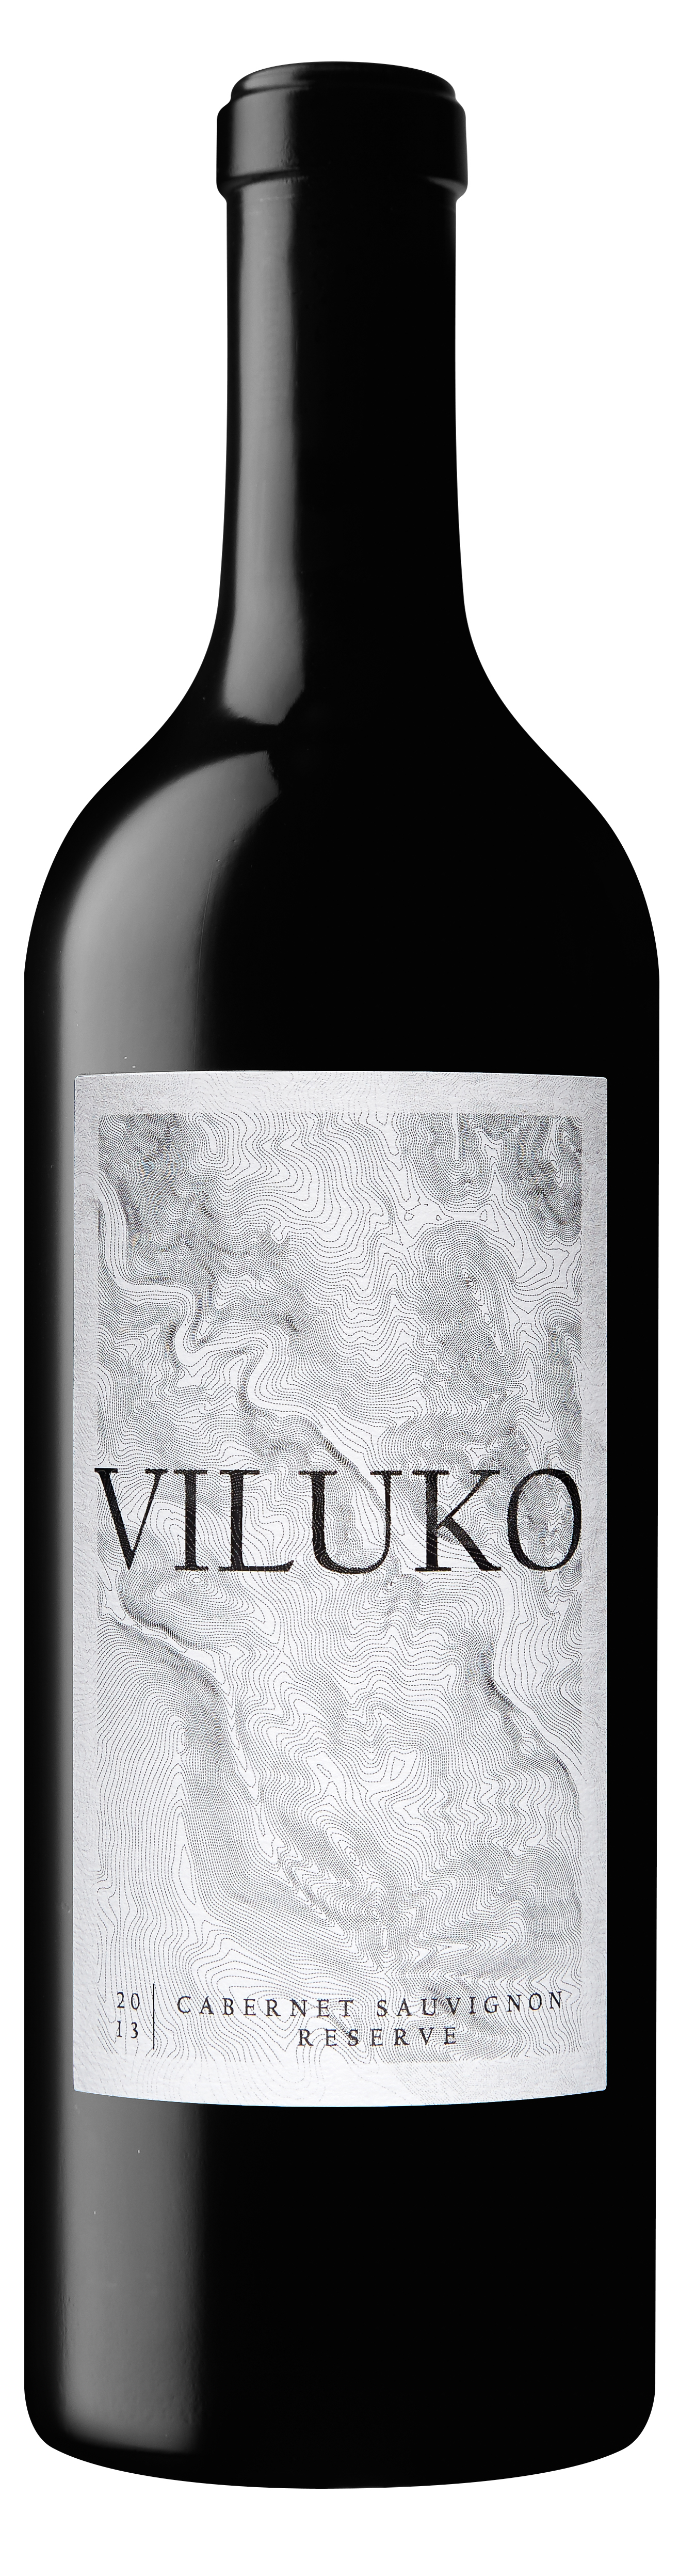 Product Image for 2013 Viluko Reserve Cabernet Sauvignon